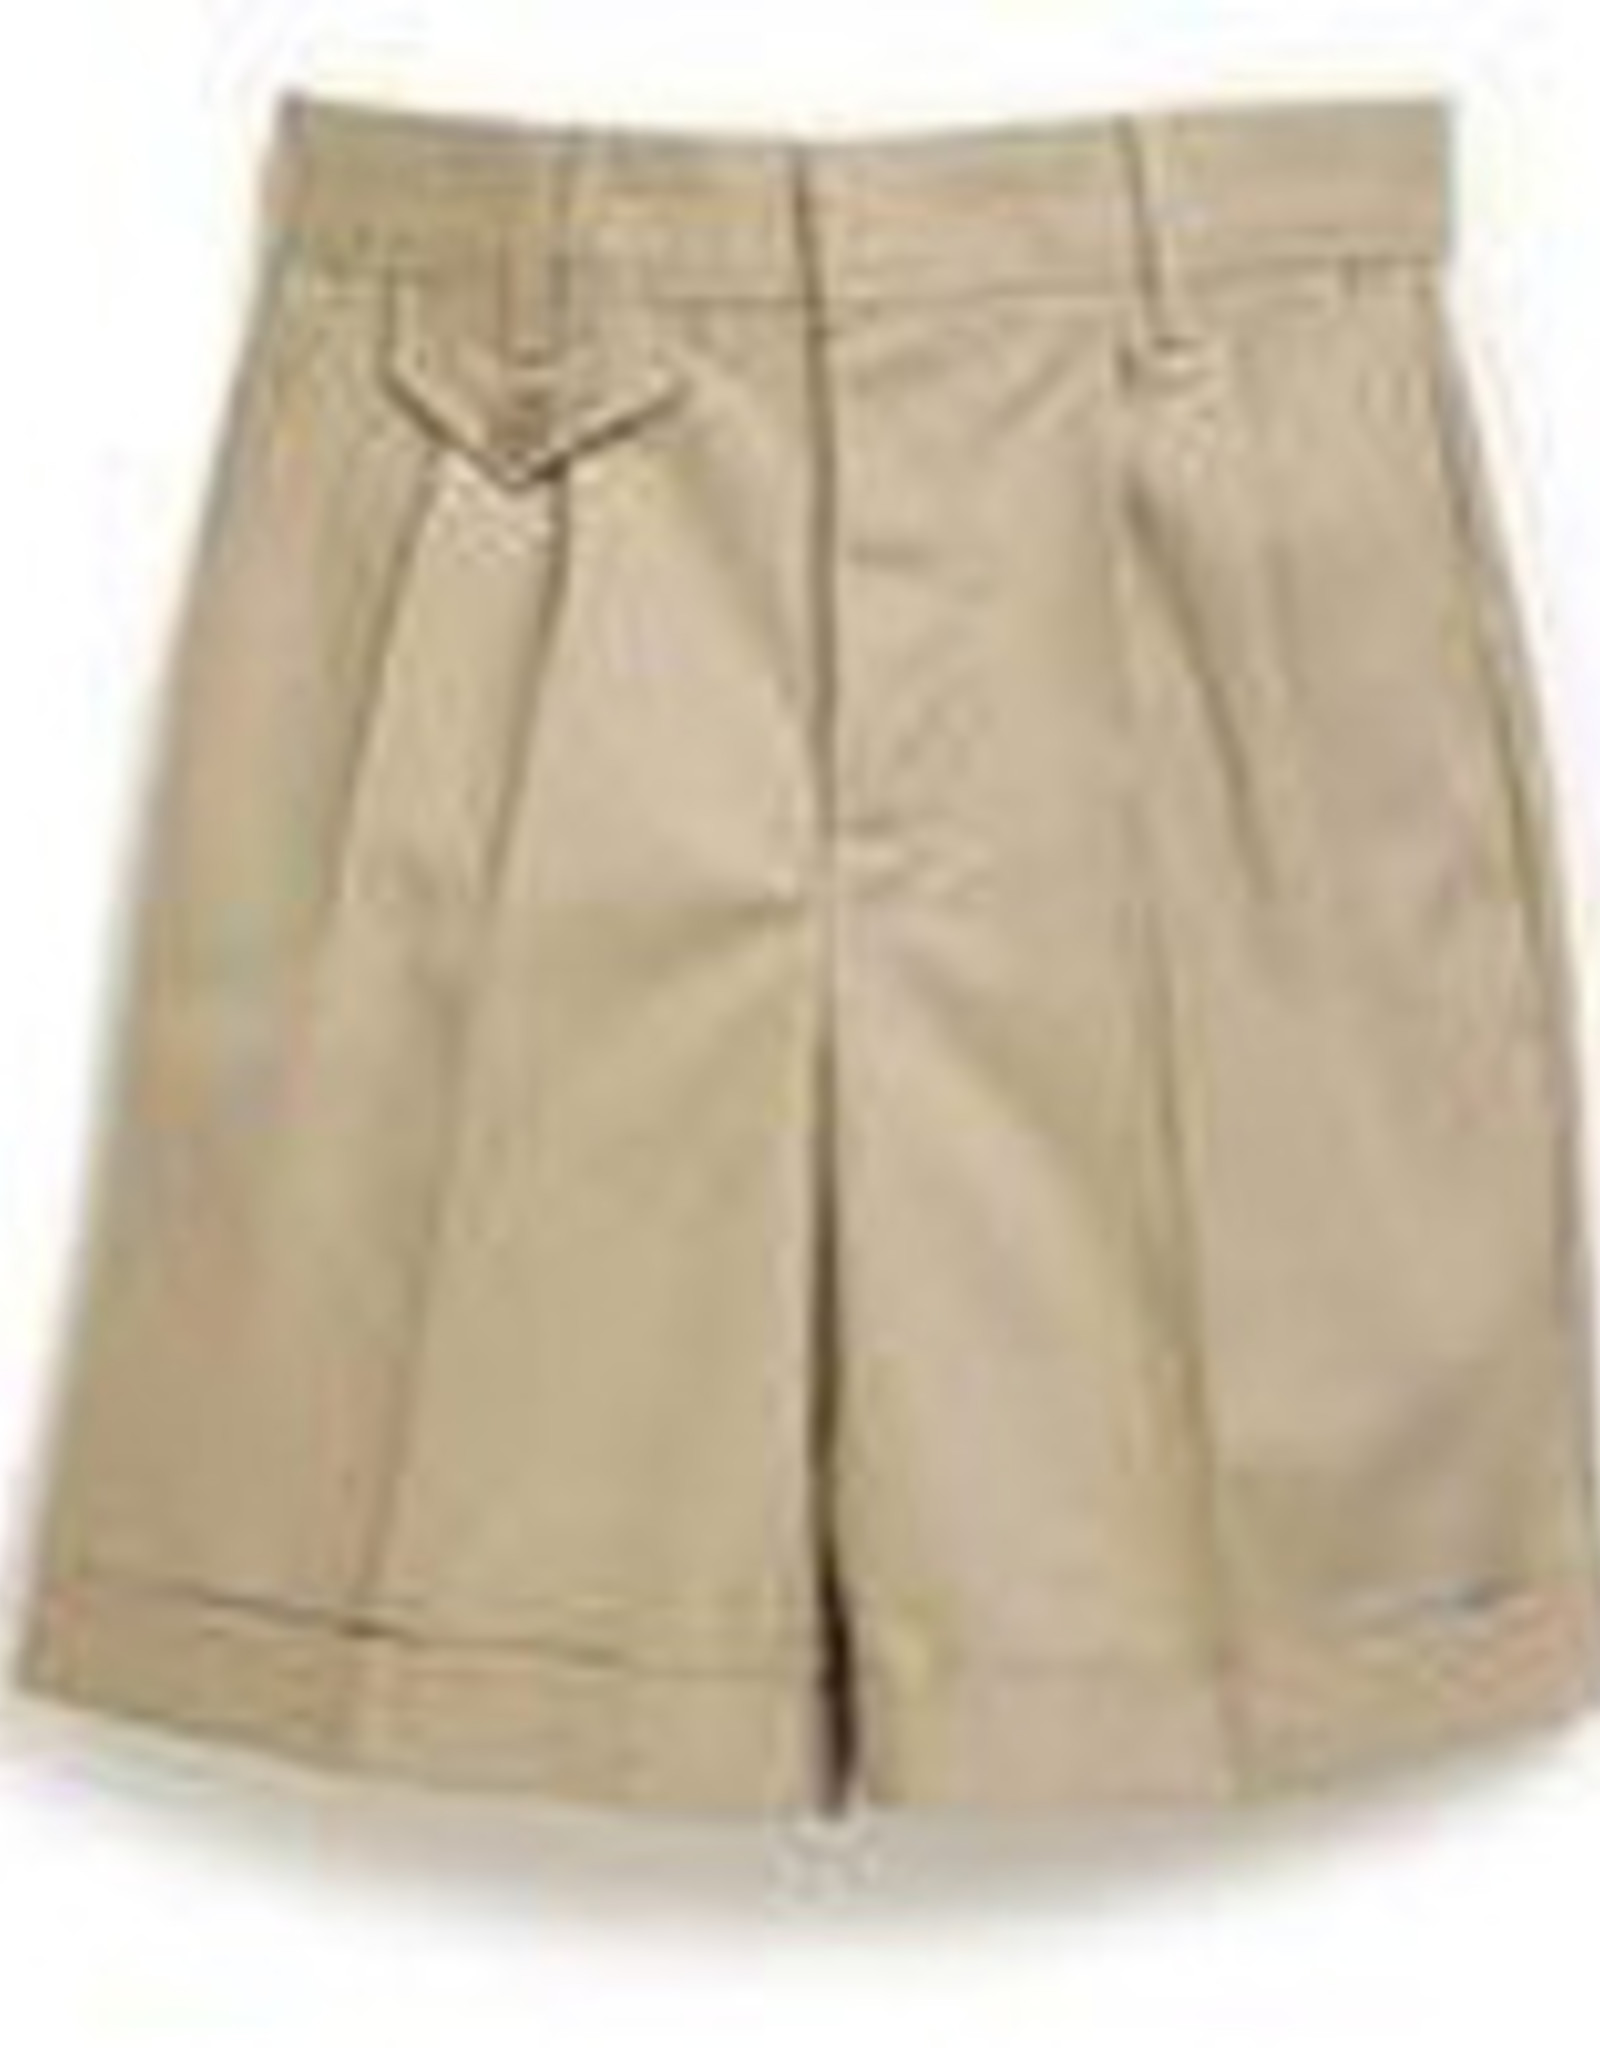 Elderwear Shorts - Girls - Size 4 - Discontinued